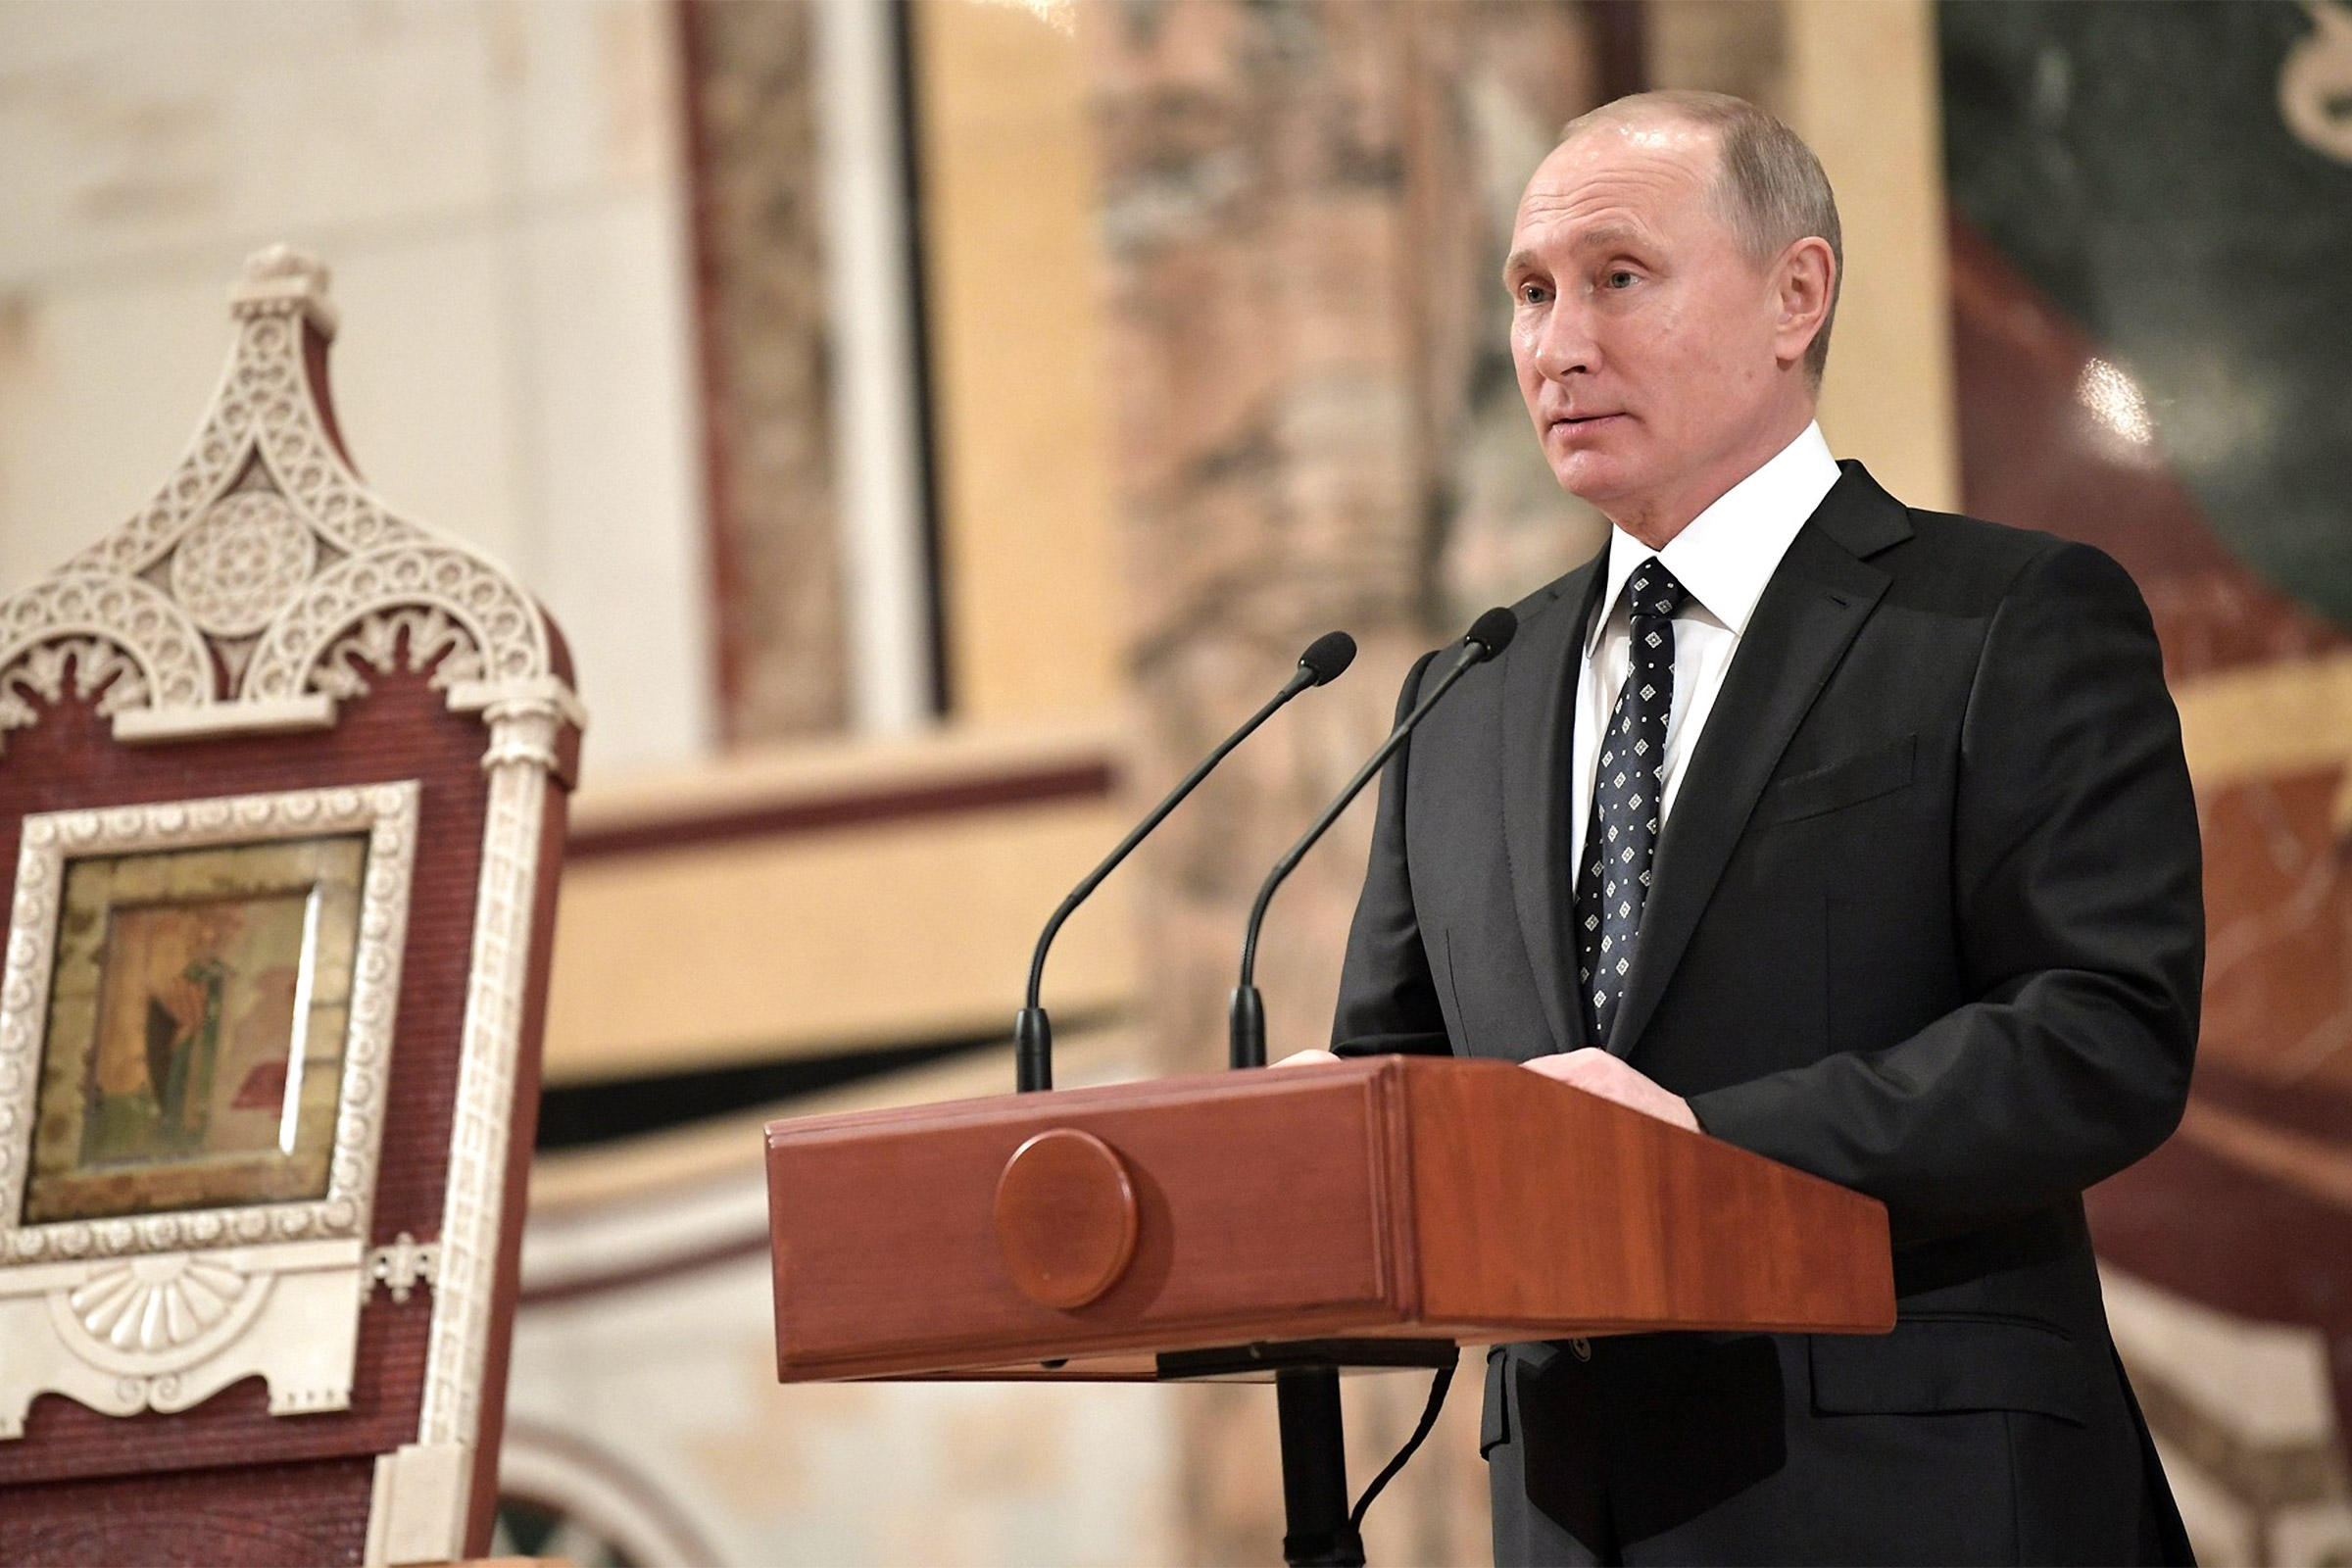 В 2017 году собор впервые посетил президент России Владимир Путин, подаривший патриарху Кириллу копию со знаменитой иконы Николая Чудотворца, которая размещена над воротами Никольской башни Кремля.